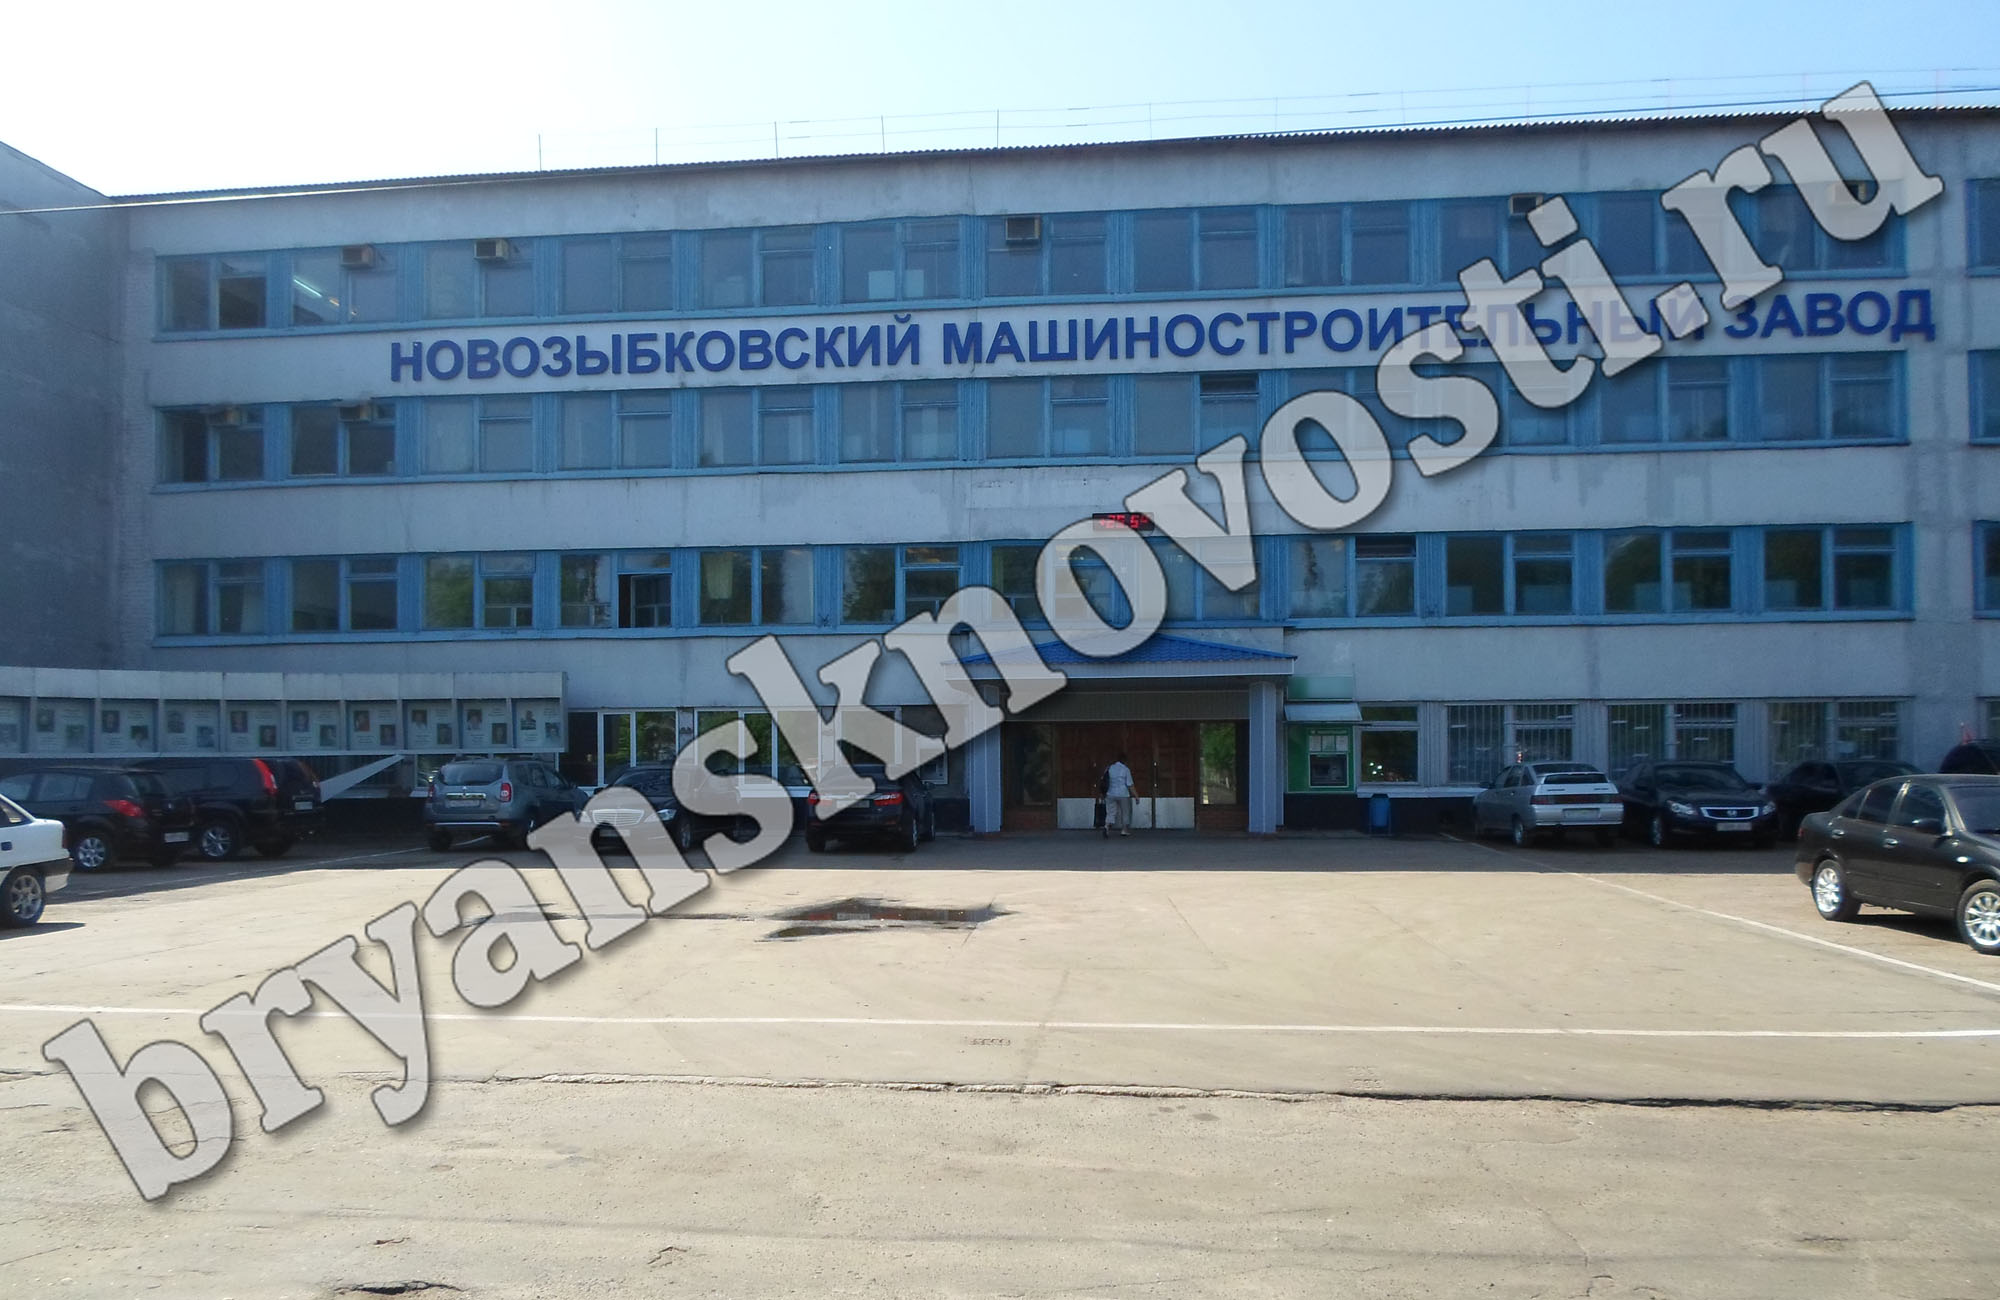 На Новозыбковском машиностроительном заводе произошла очередная кража